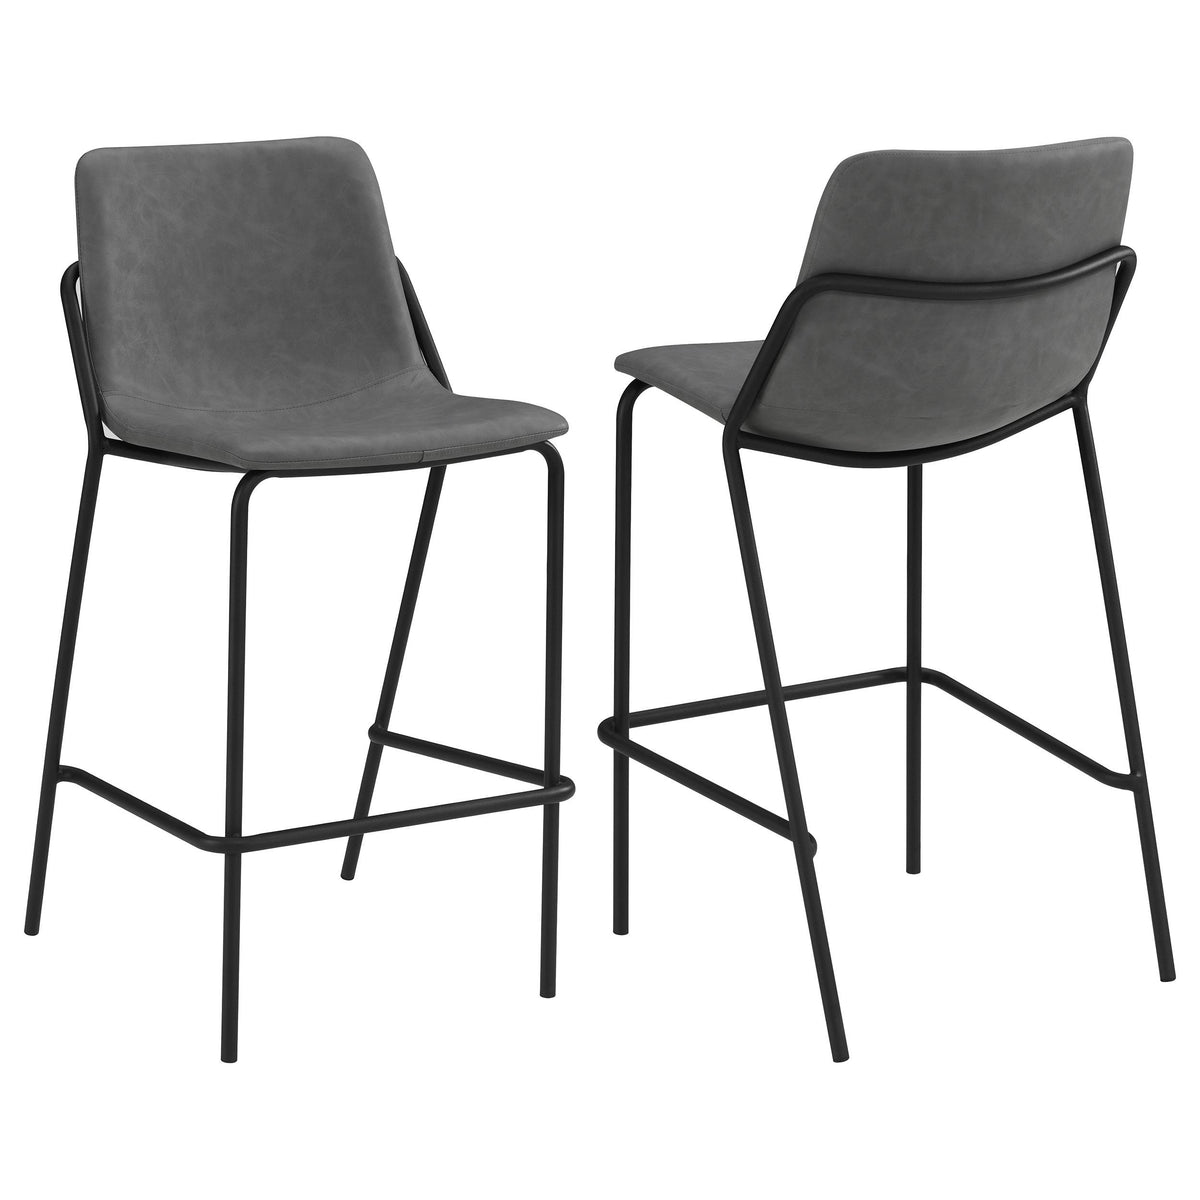 Earnest Solid Back Upholstered Bar Stools Grey and Black (Set of 2)  Las Vegas Furniture Stores